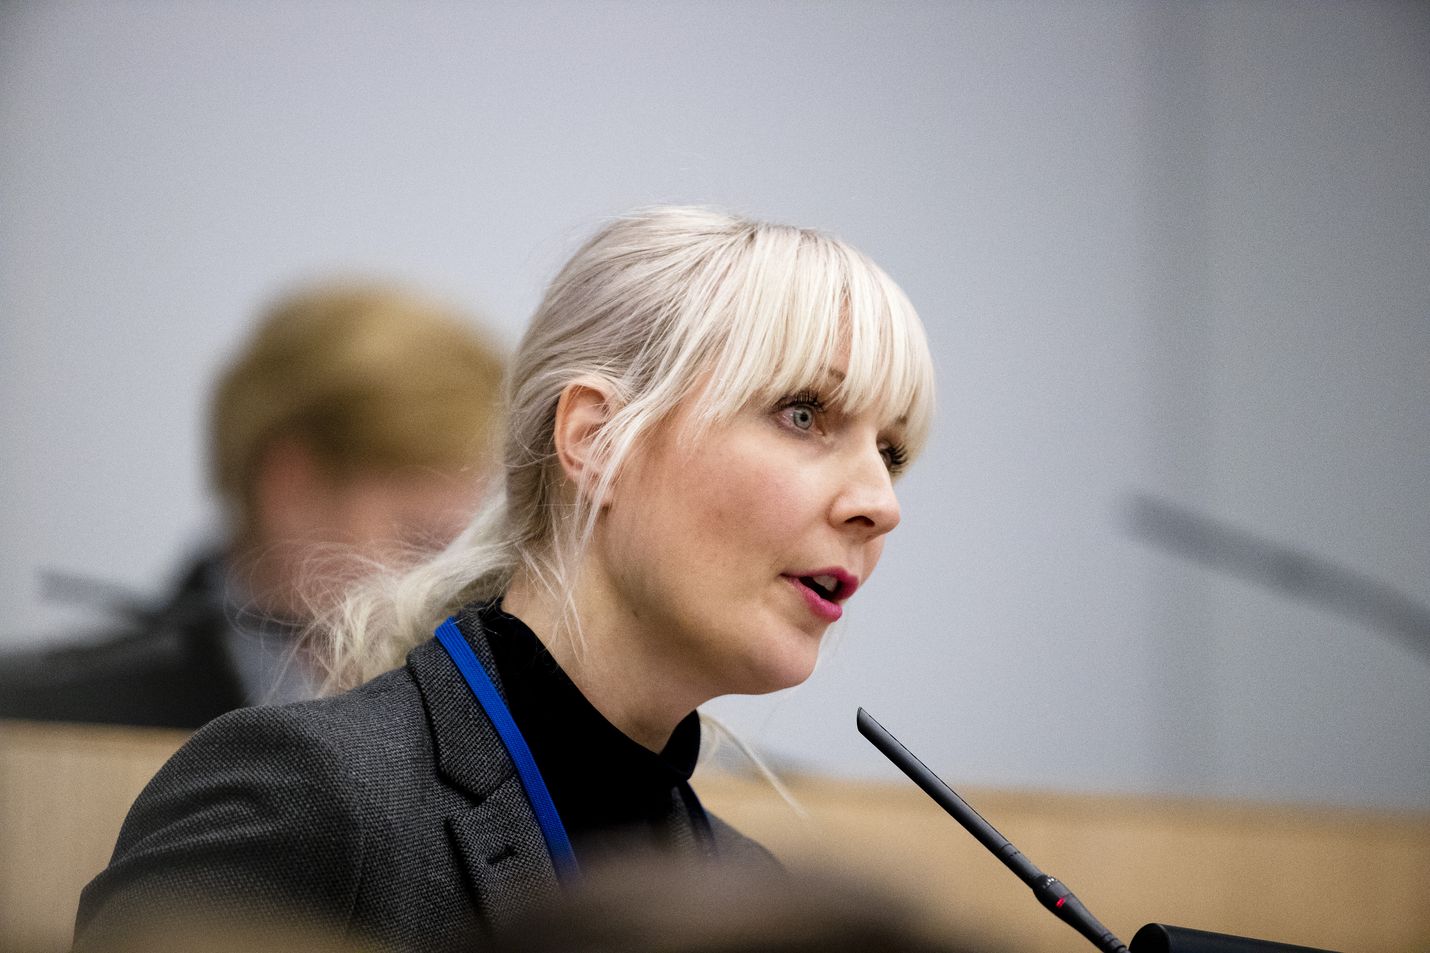 Perussuomalaisten europarlamentaarikko Laura Huhtasaari iloitsi eduskunnan perjantaisesta äänestystuloksesta.